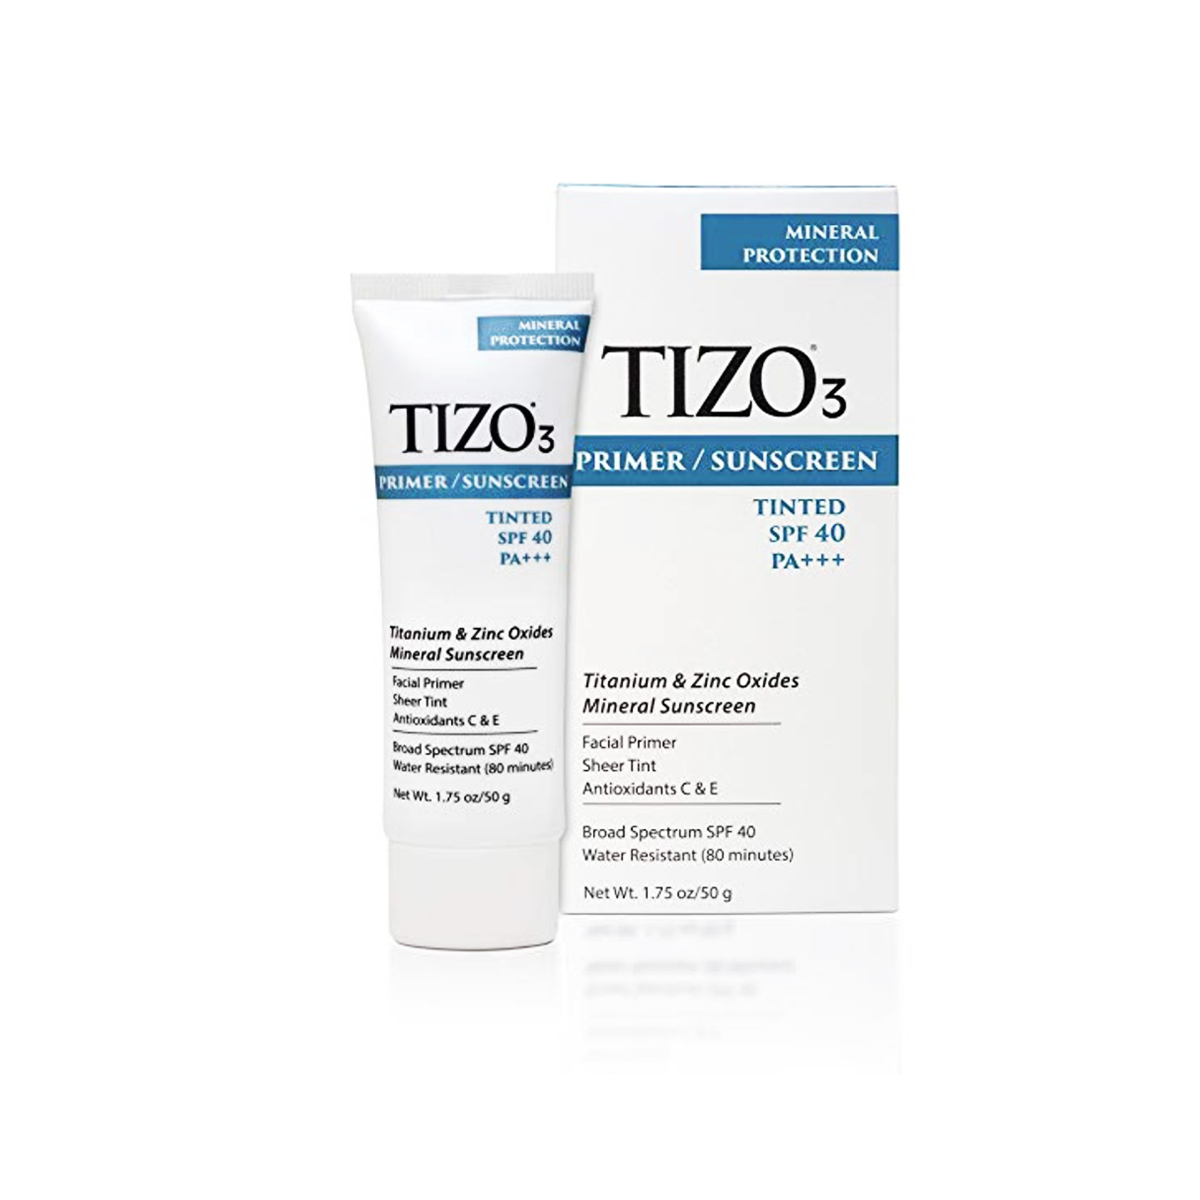 TIZO3 Facial Primer/Sunscreen Tinted SPF 40